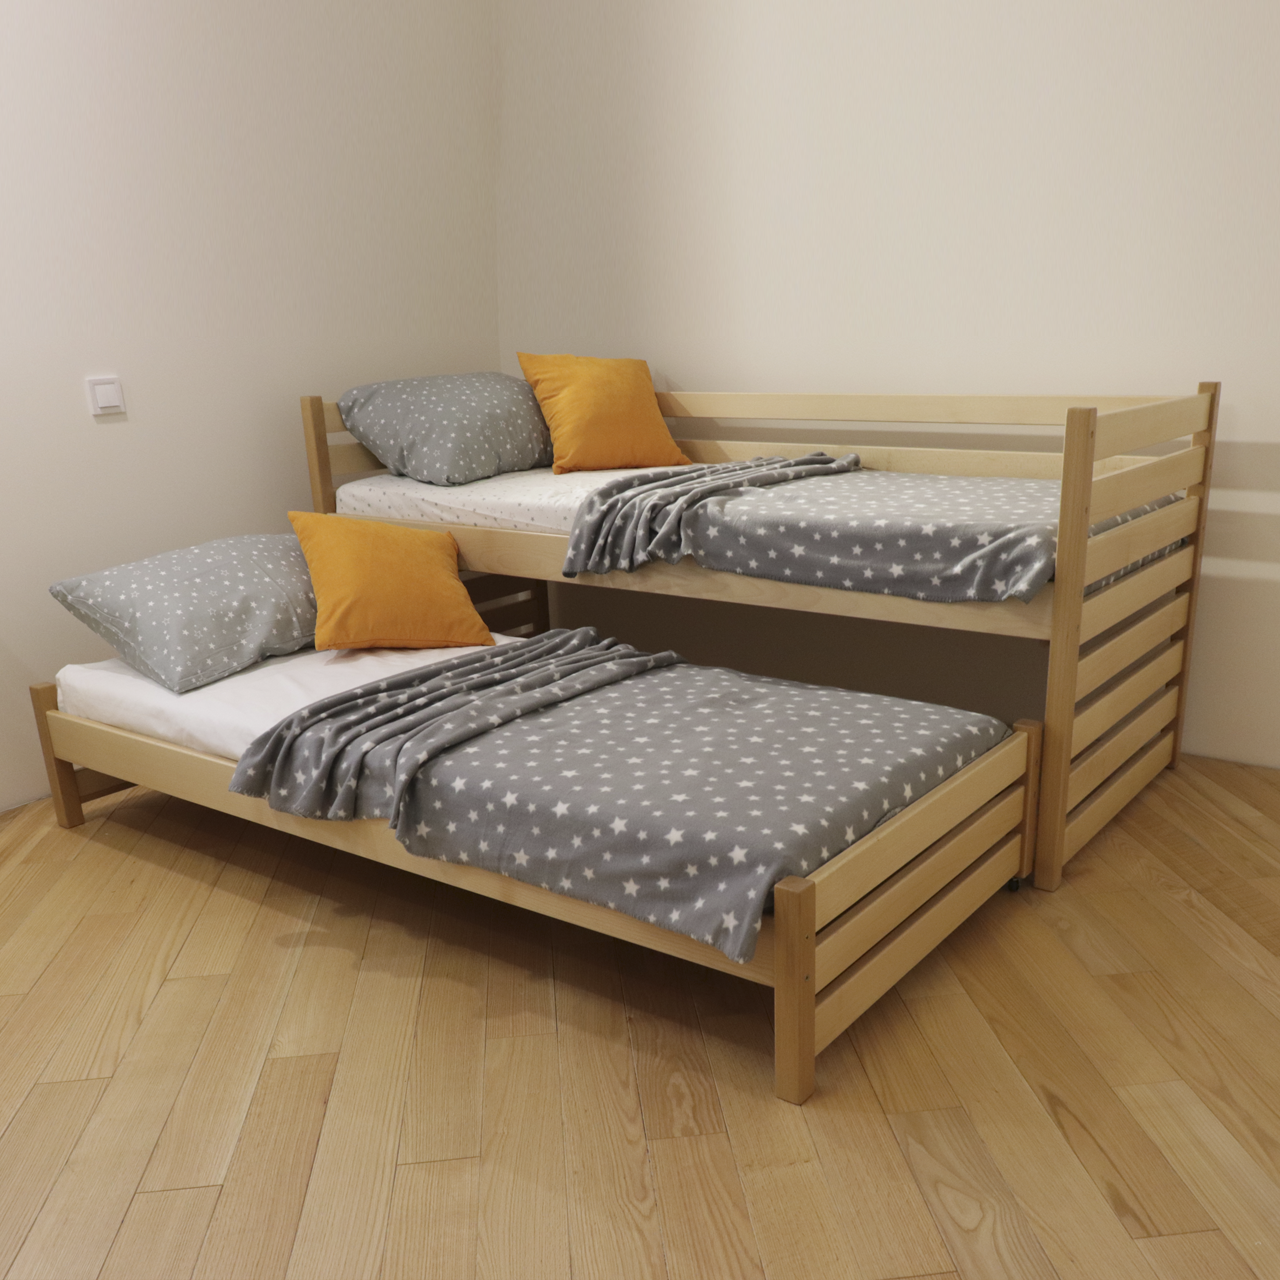 Ліжко дитяче дерев'яне Сімба з додатковим спальним місцем (масив бука)